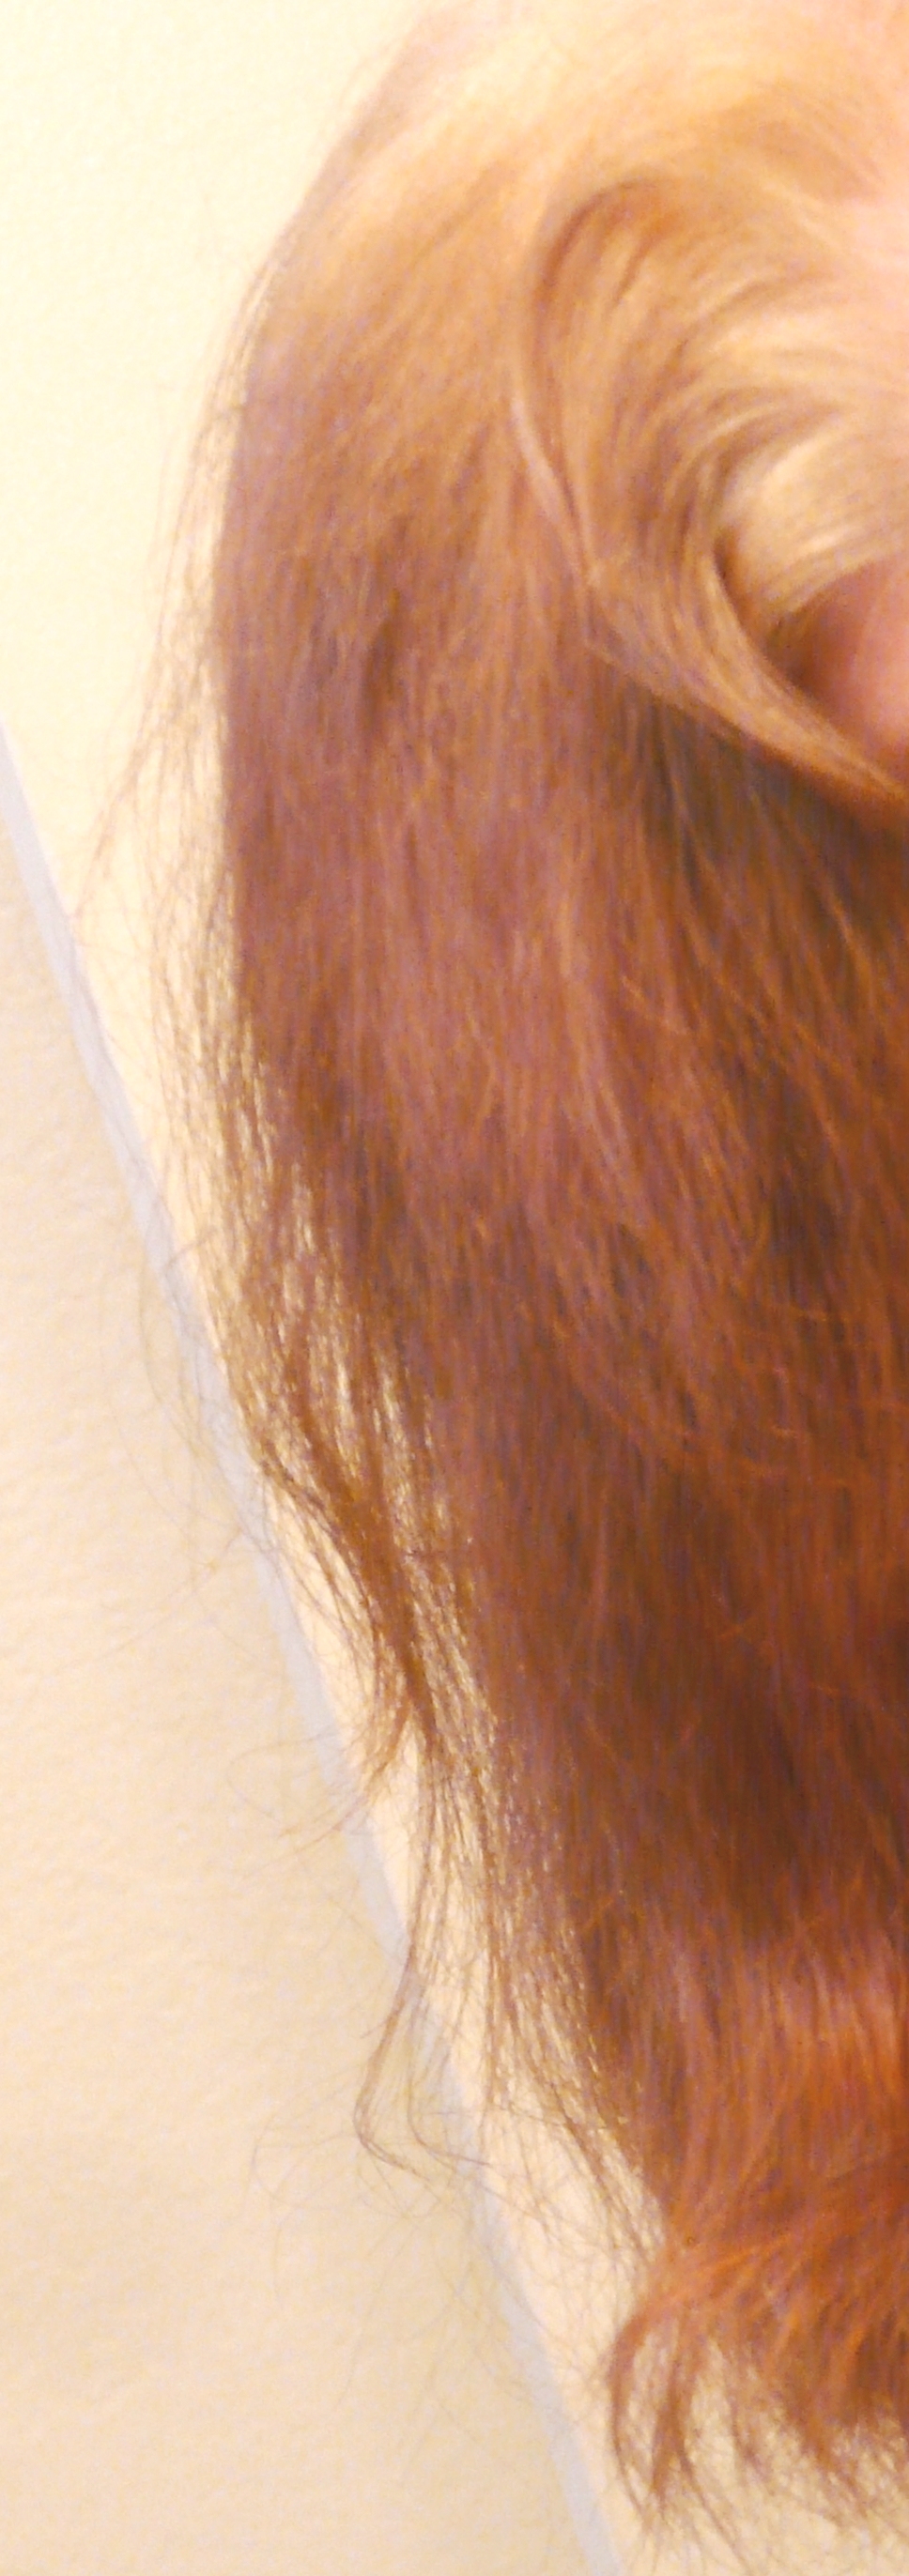 Orange Hair Misadventures In Going Natural From Dark Brown Part